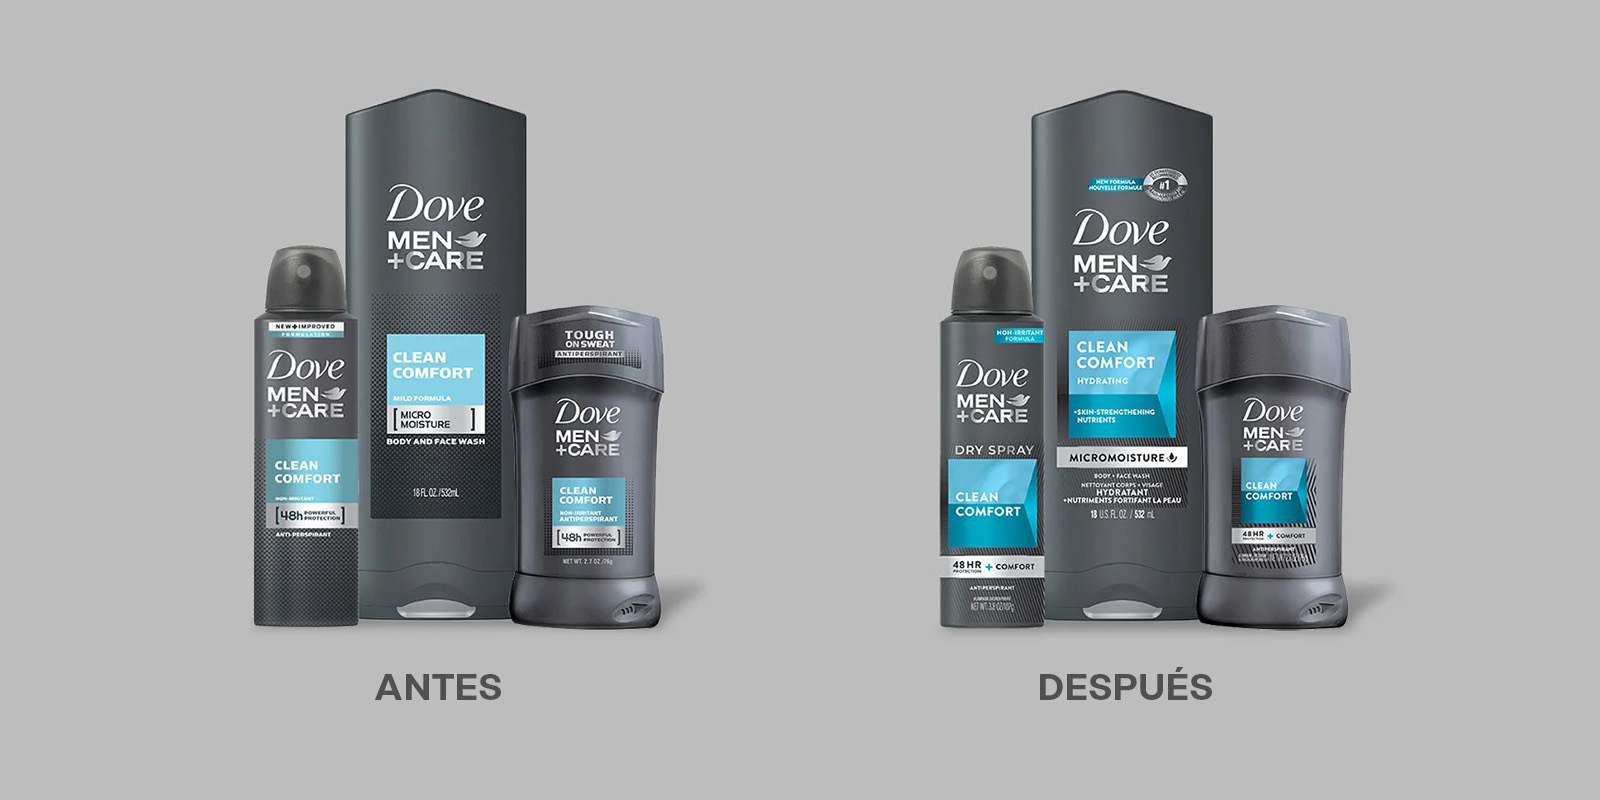 Antes y después del rediseño de packaging de la línea Dove Men+Care. El nuevo envase comunica los beneficios del producto con mayor claridad.